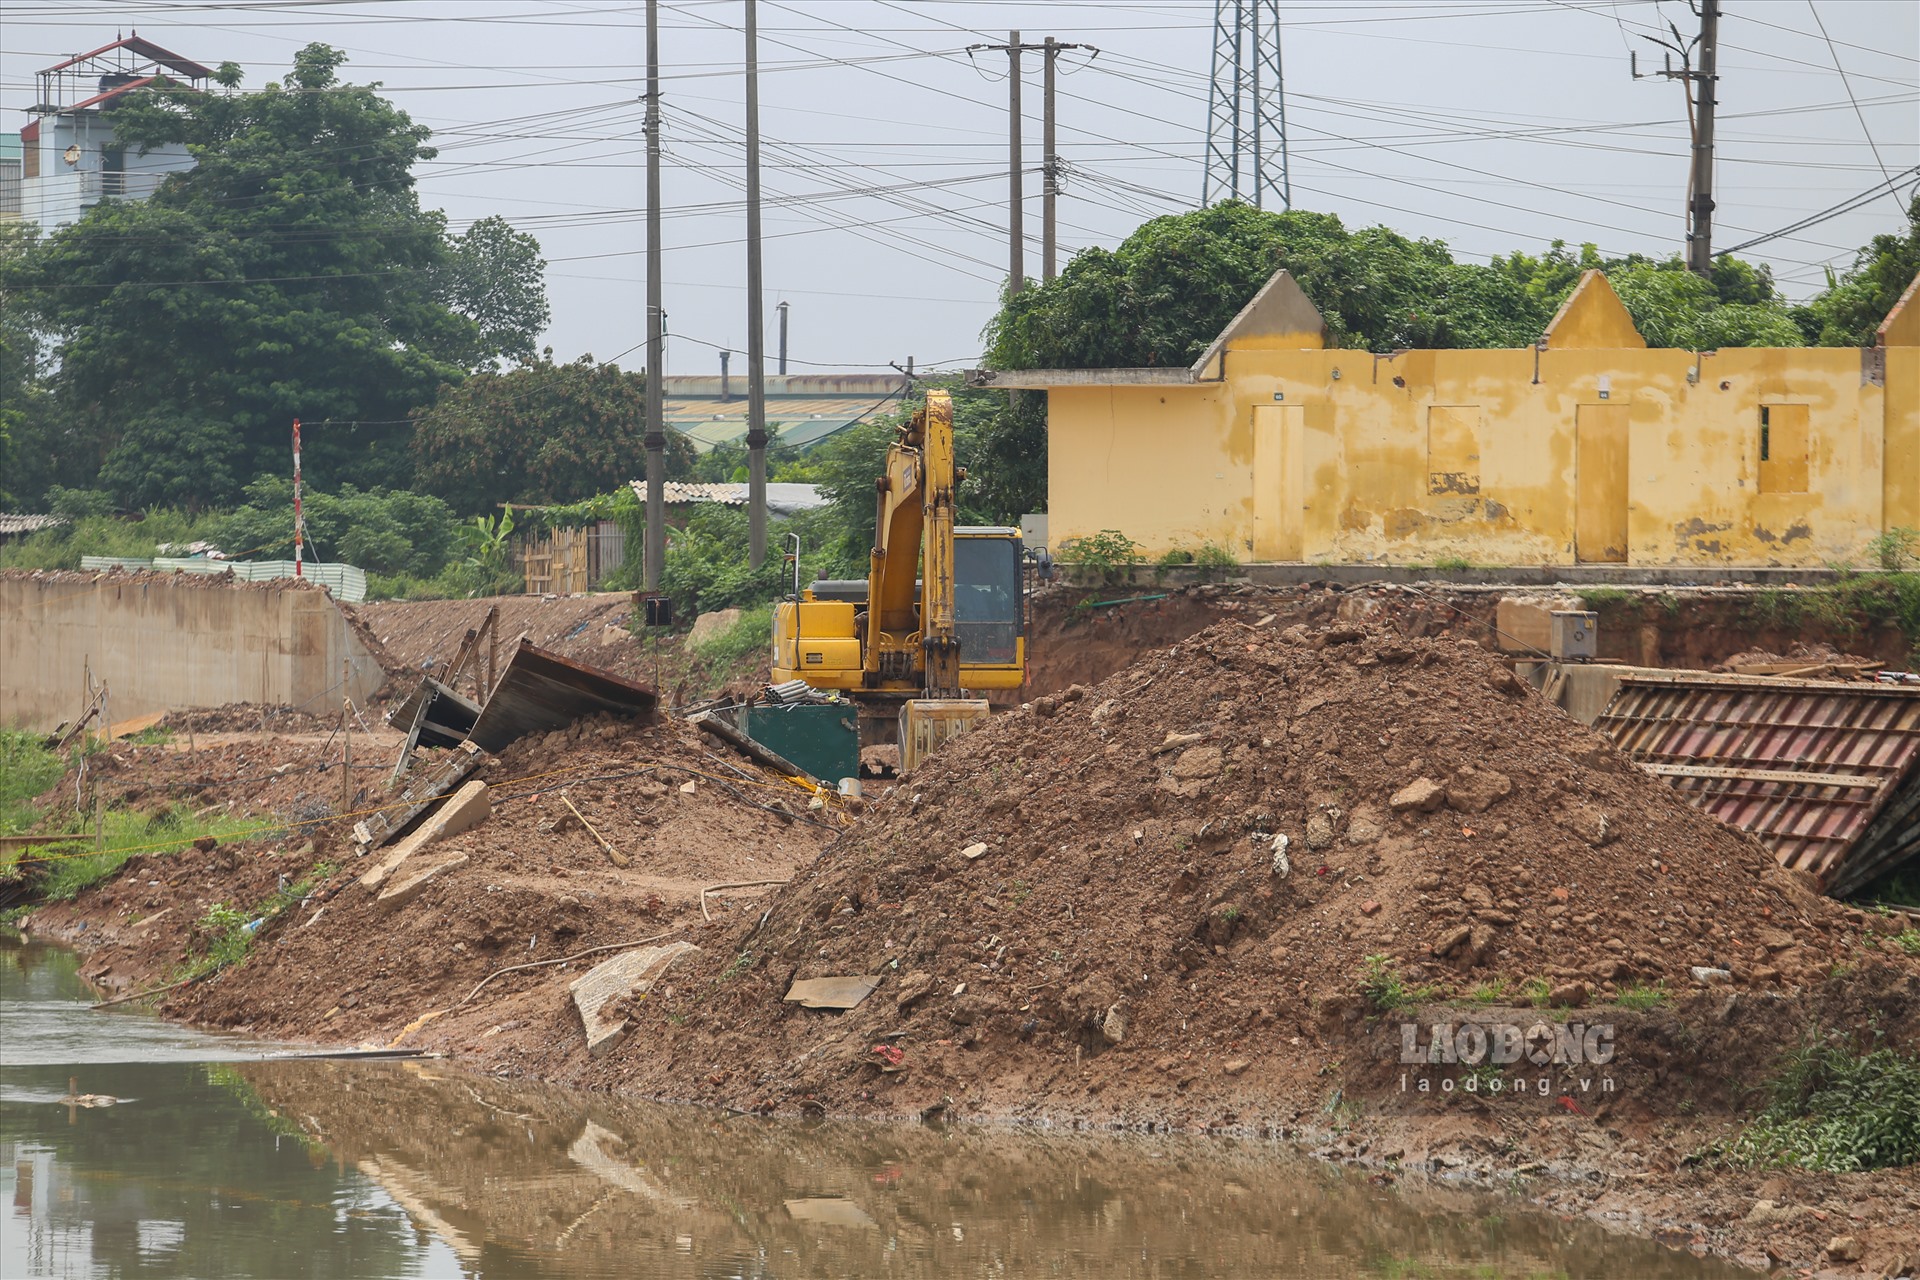 Ghi nhận của PV báo Lao Động ngày 1.8, tại khu vực triển khai cứng hóa kênh La Khê đoạn qua địa bàn phường Dương Nội (quận Hà Đông), vẫn còn một đoạn khá dài đang trong giai đoạn thi công.